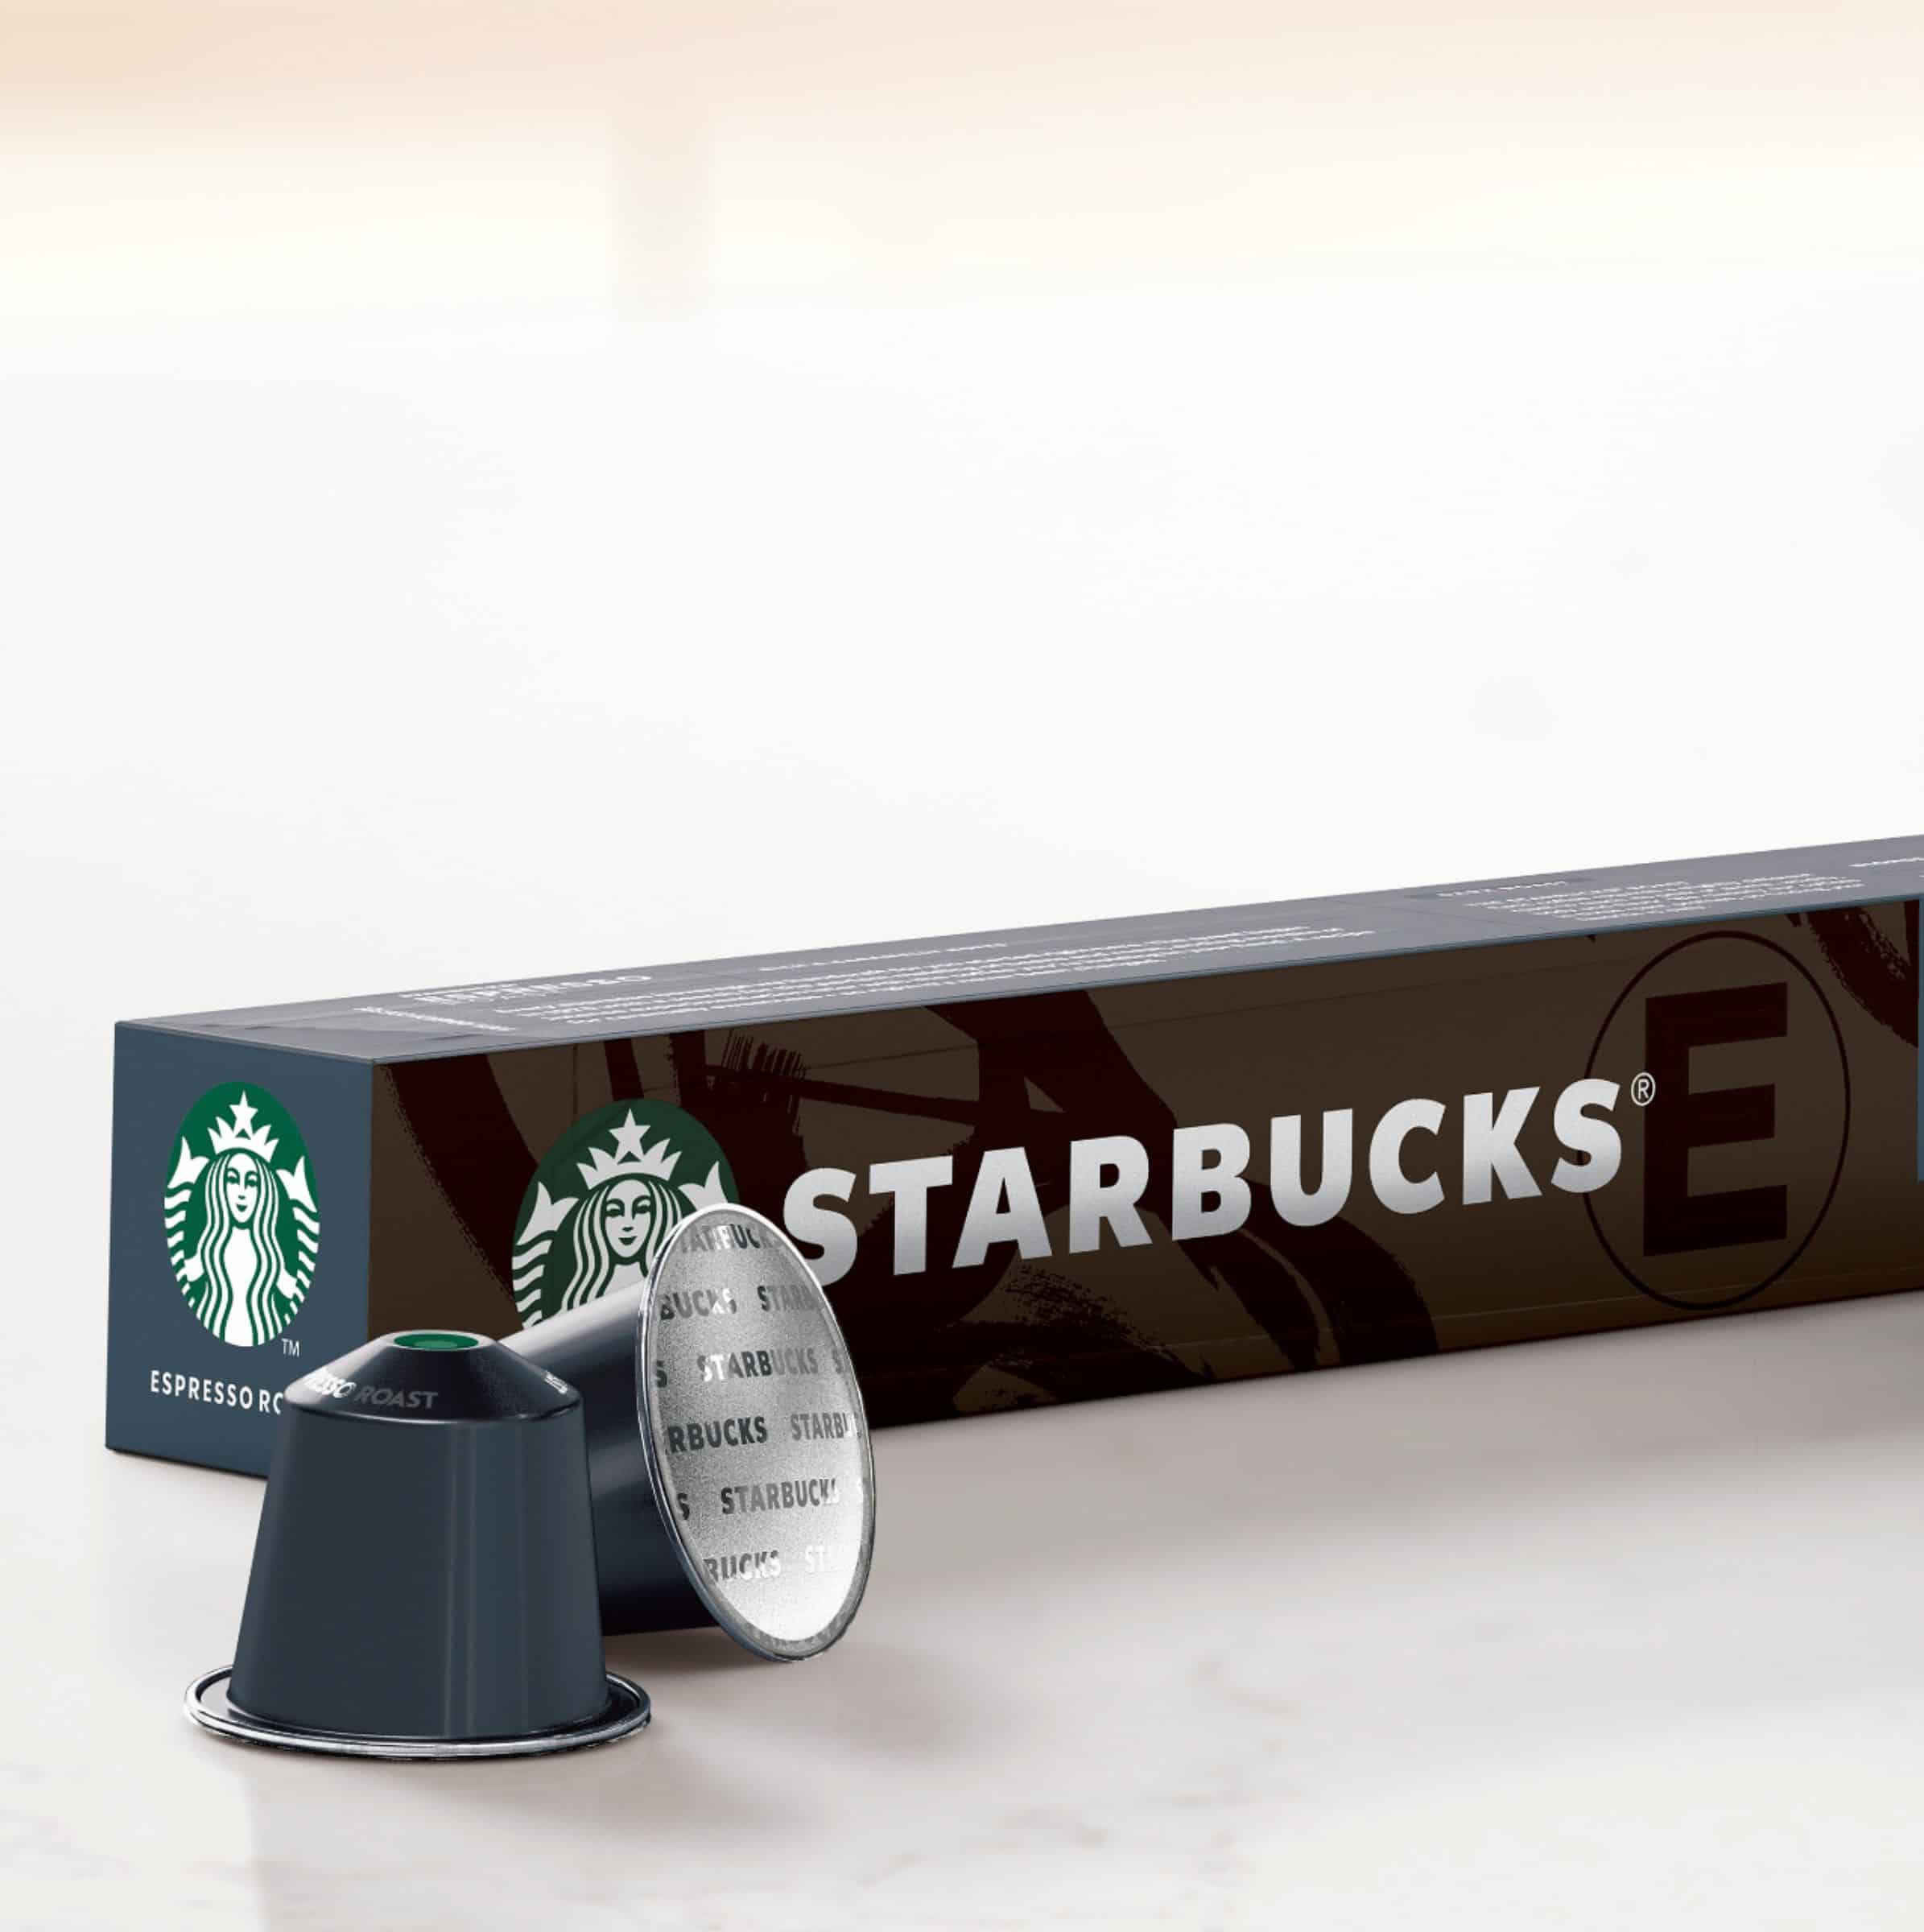 Starbucks Nespresso Espresso Roast Coffee Pods (10